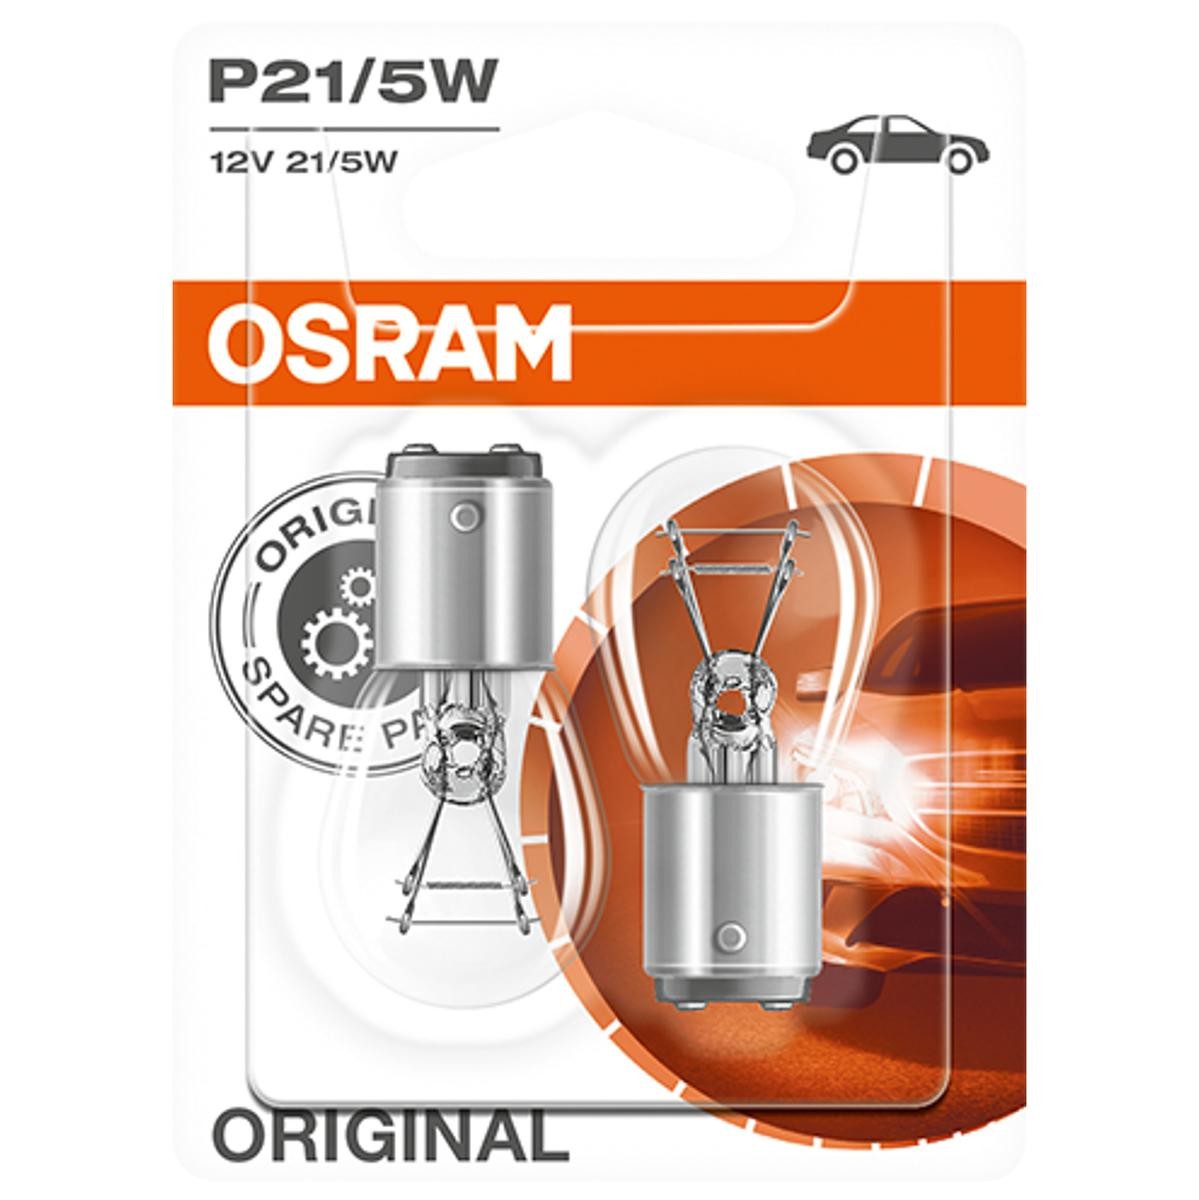 P21/5W OSRAM ORIGINAL LINE 12V 21/5W, P21/5W Bulb, indicator 7528-02B buy